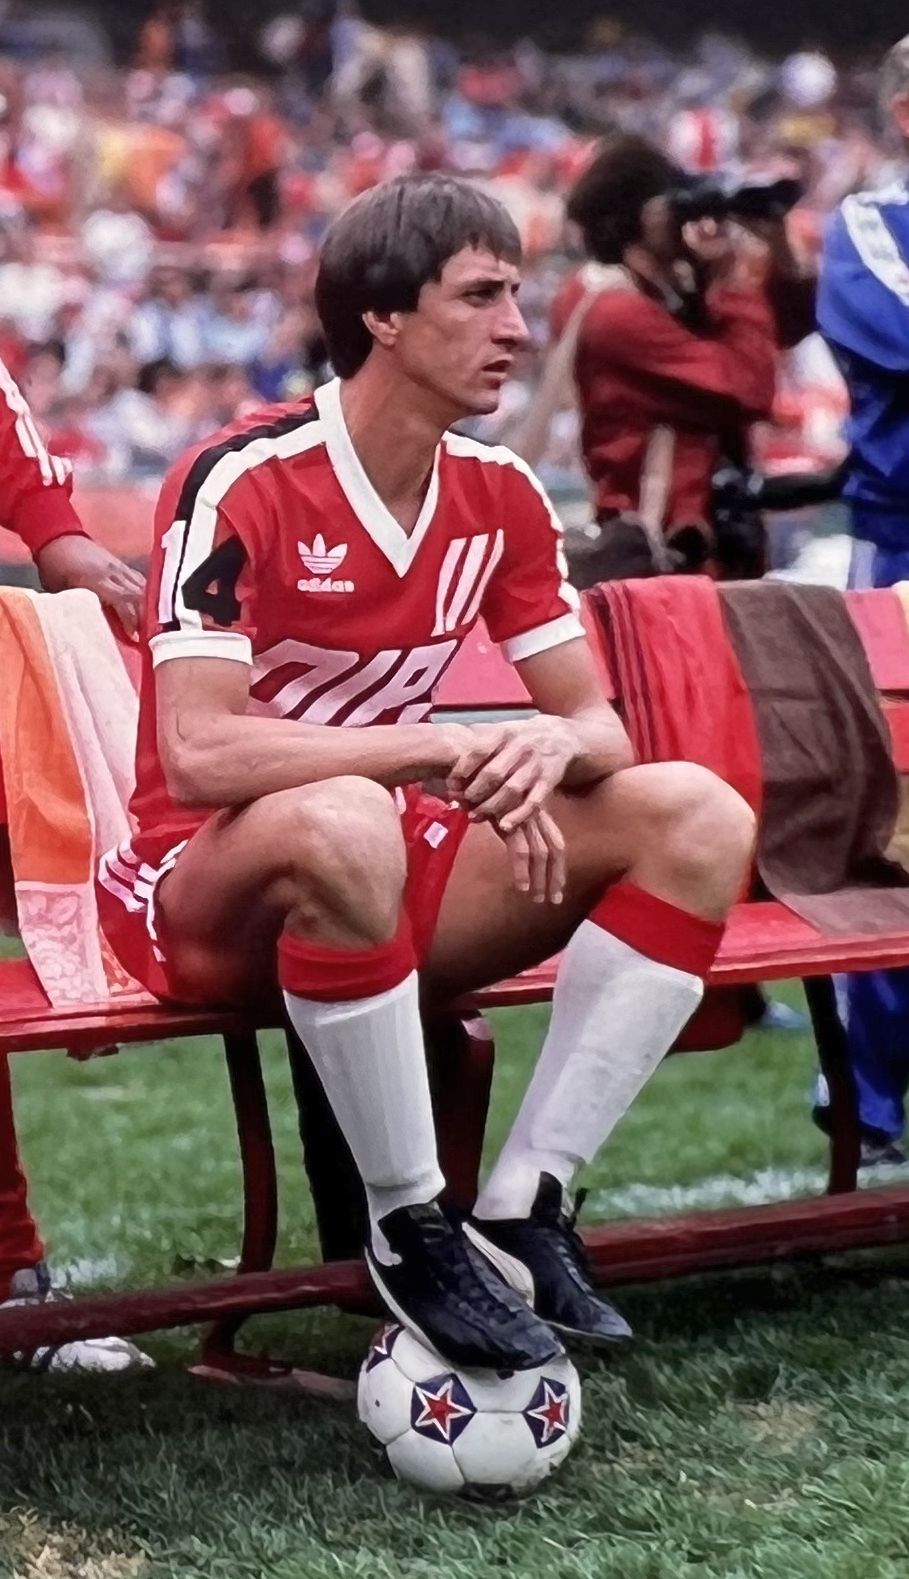 Washington Diplomats NASL: Johan Cruyff, 1980